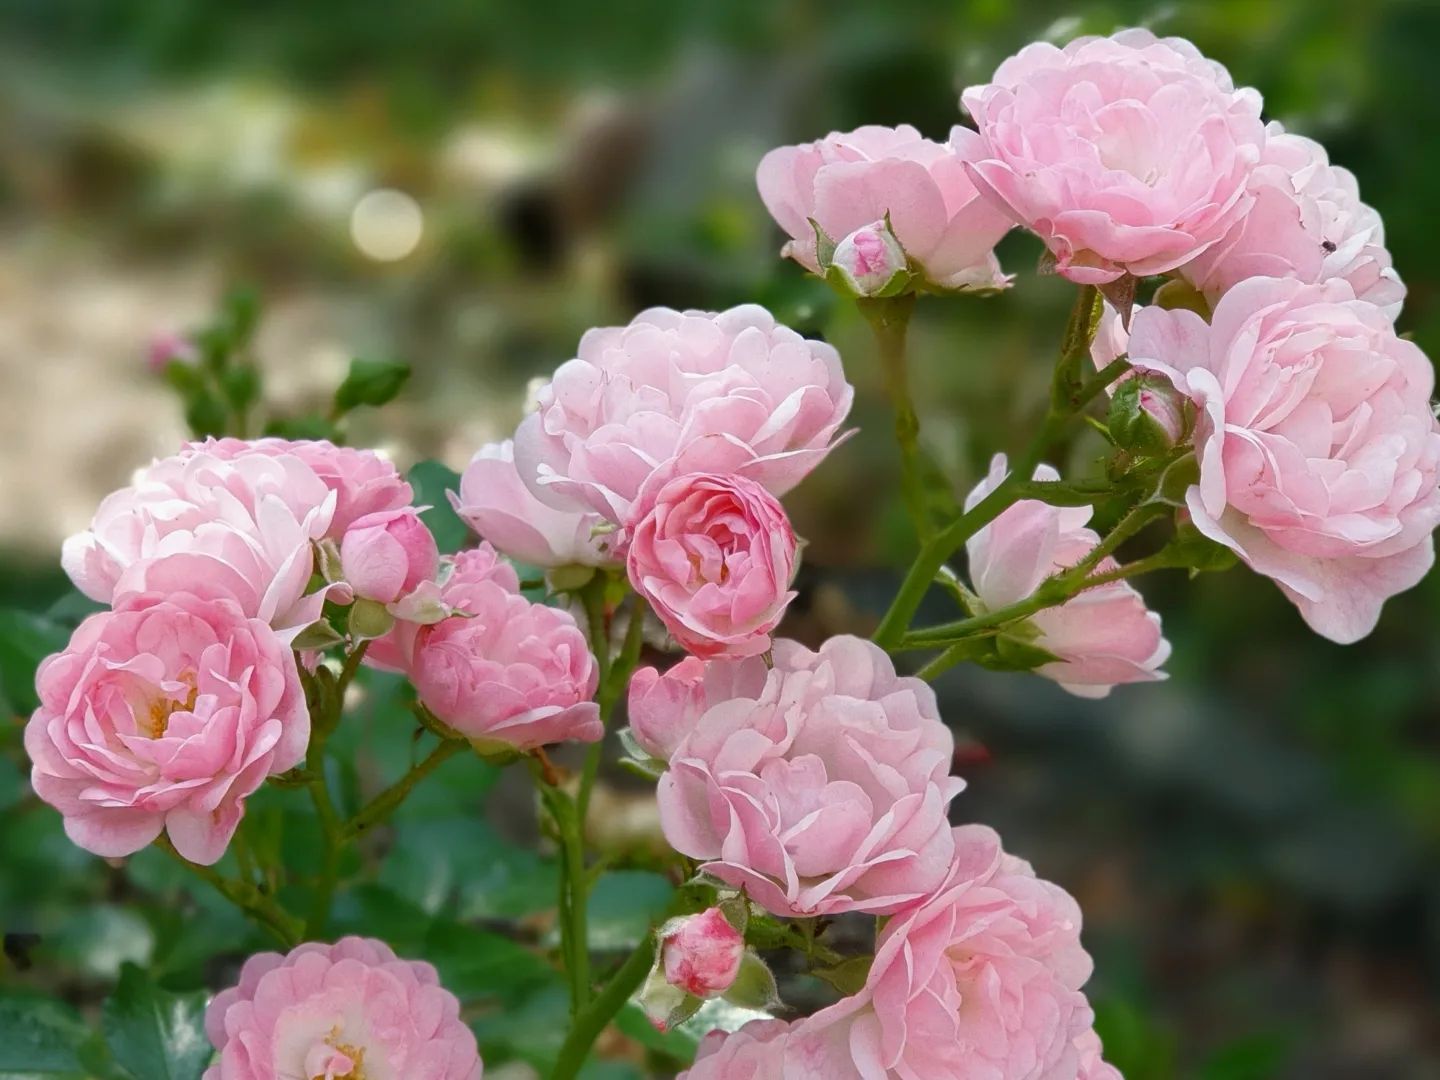 verdens mest populære bunddækkende rose som er flot lys-rosa eller lyserød